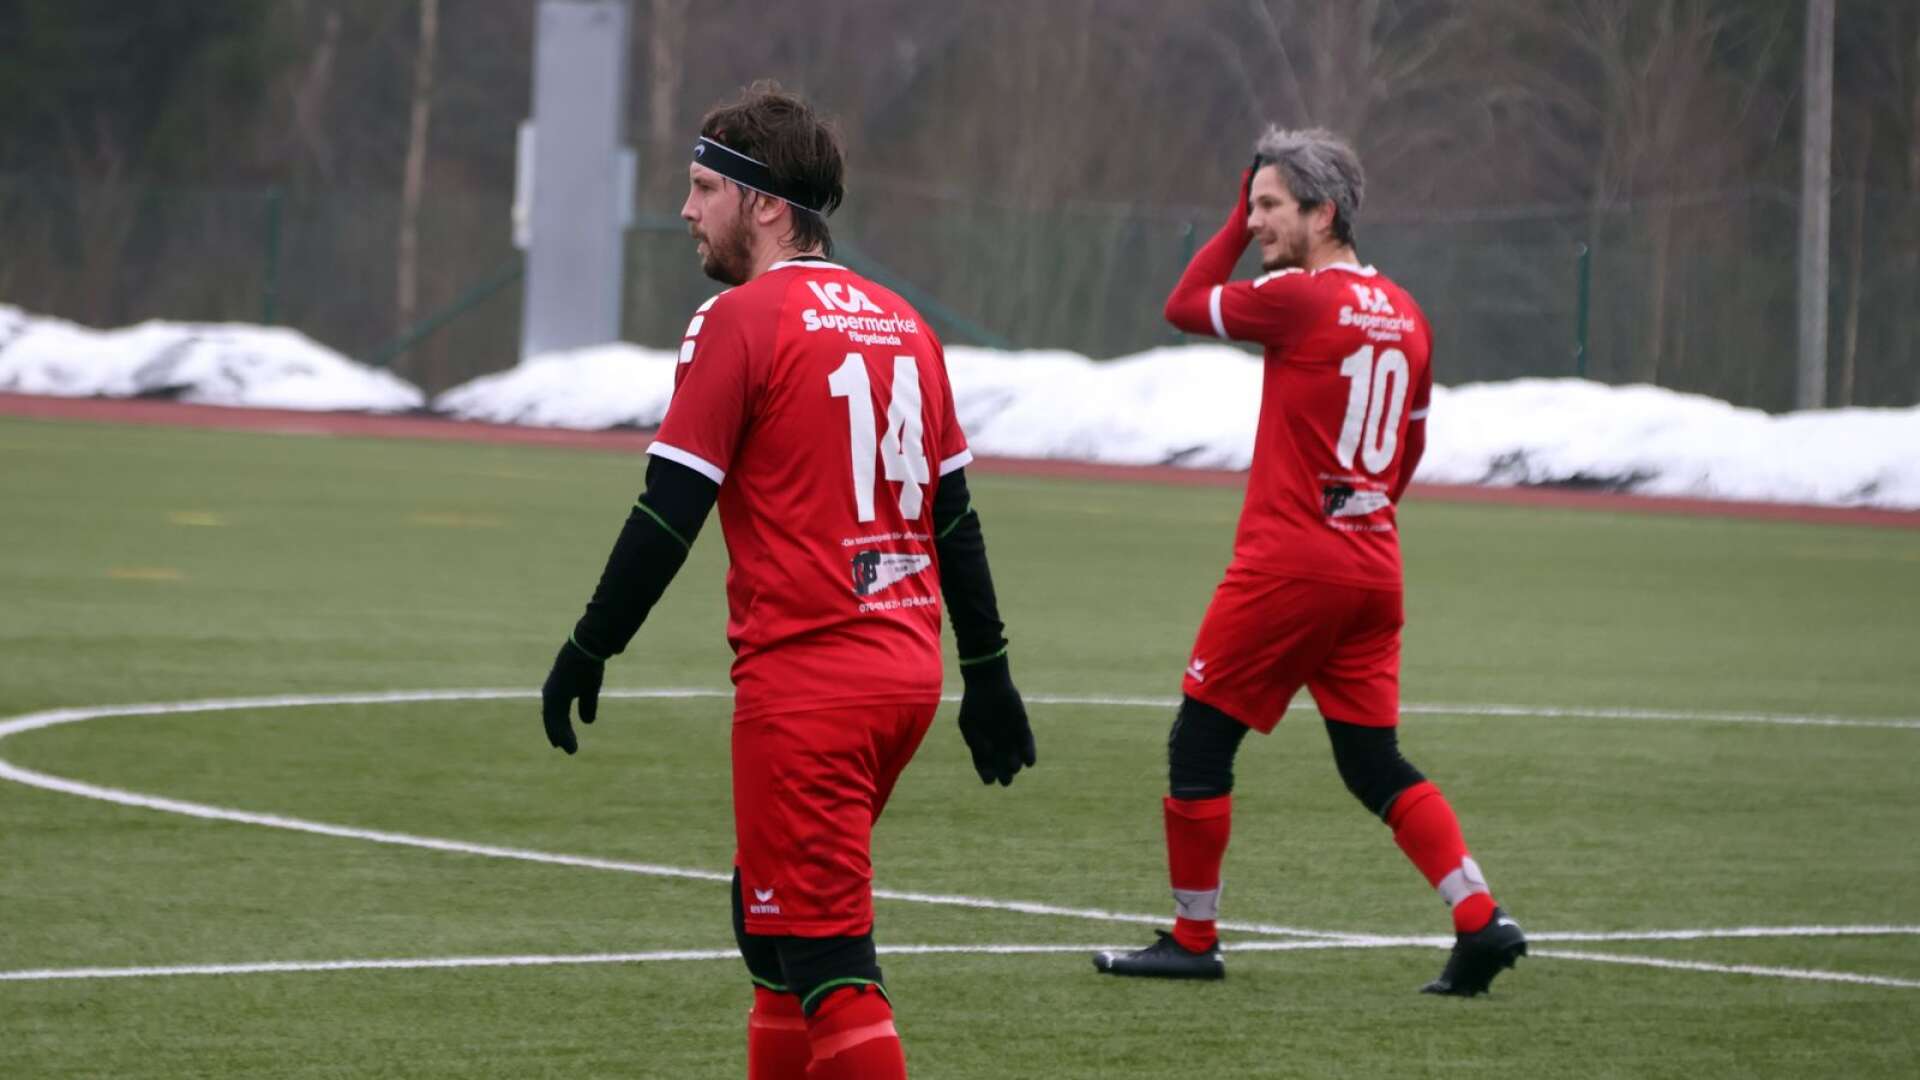 Kusinerna Mathias och Johan Bäckströms Färgelanda IF får vänta en vecka till på säsongens första poäng.